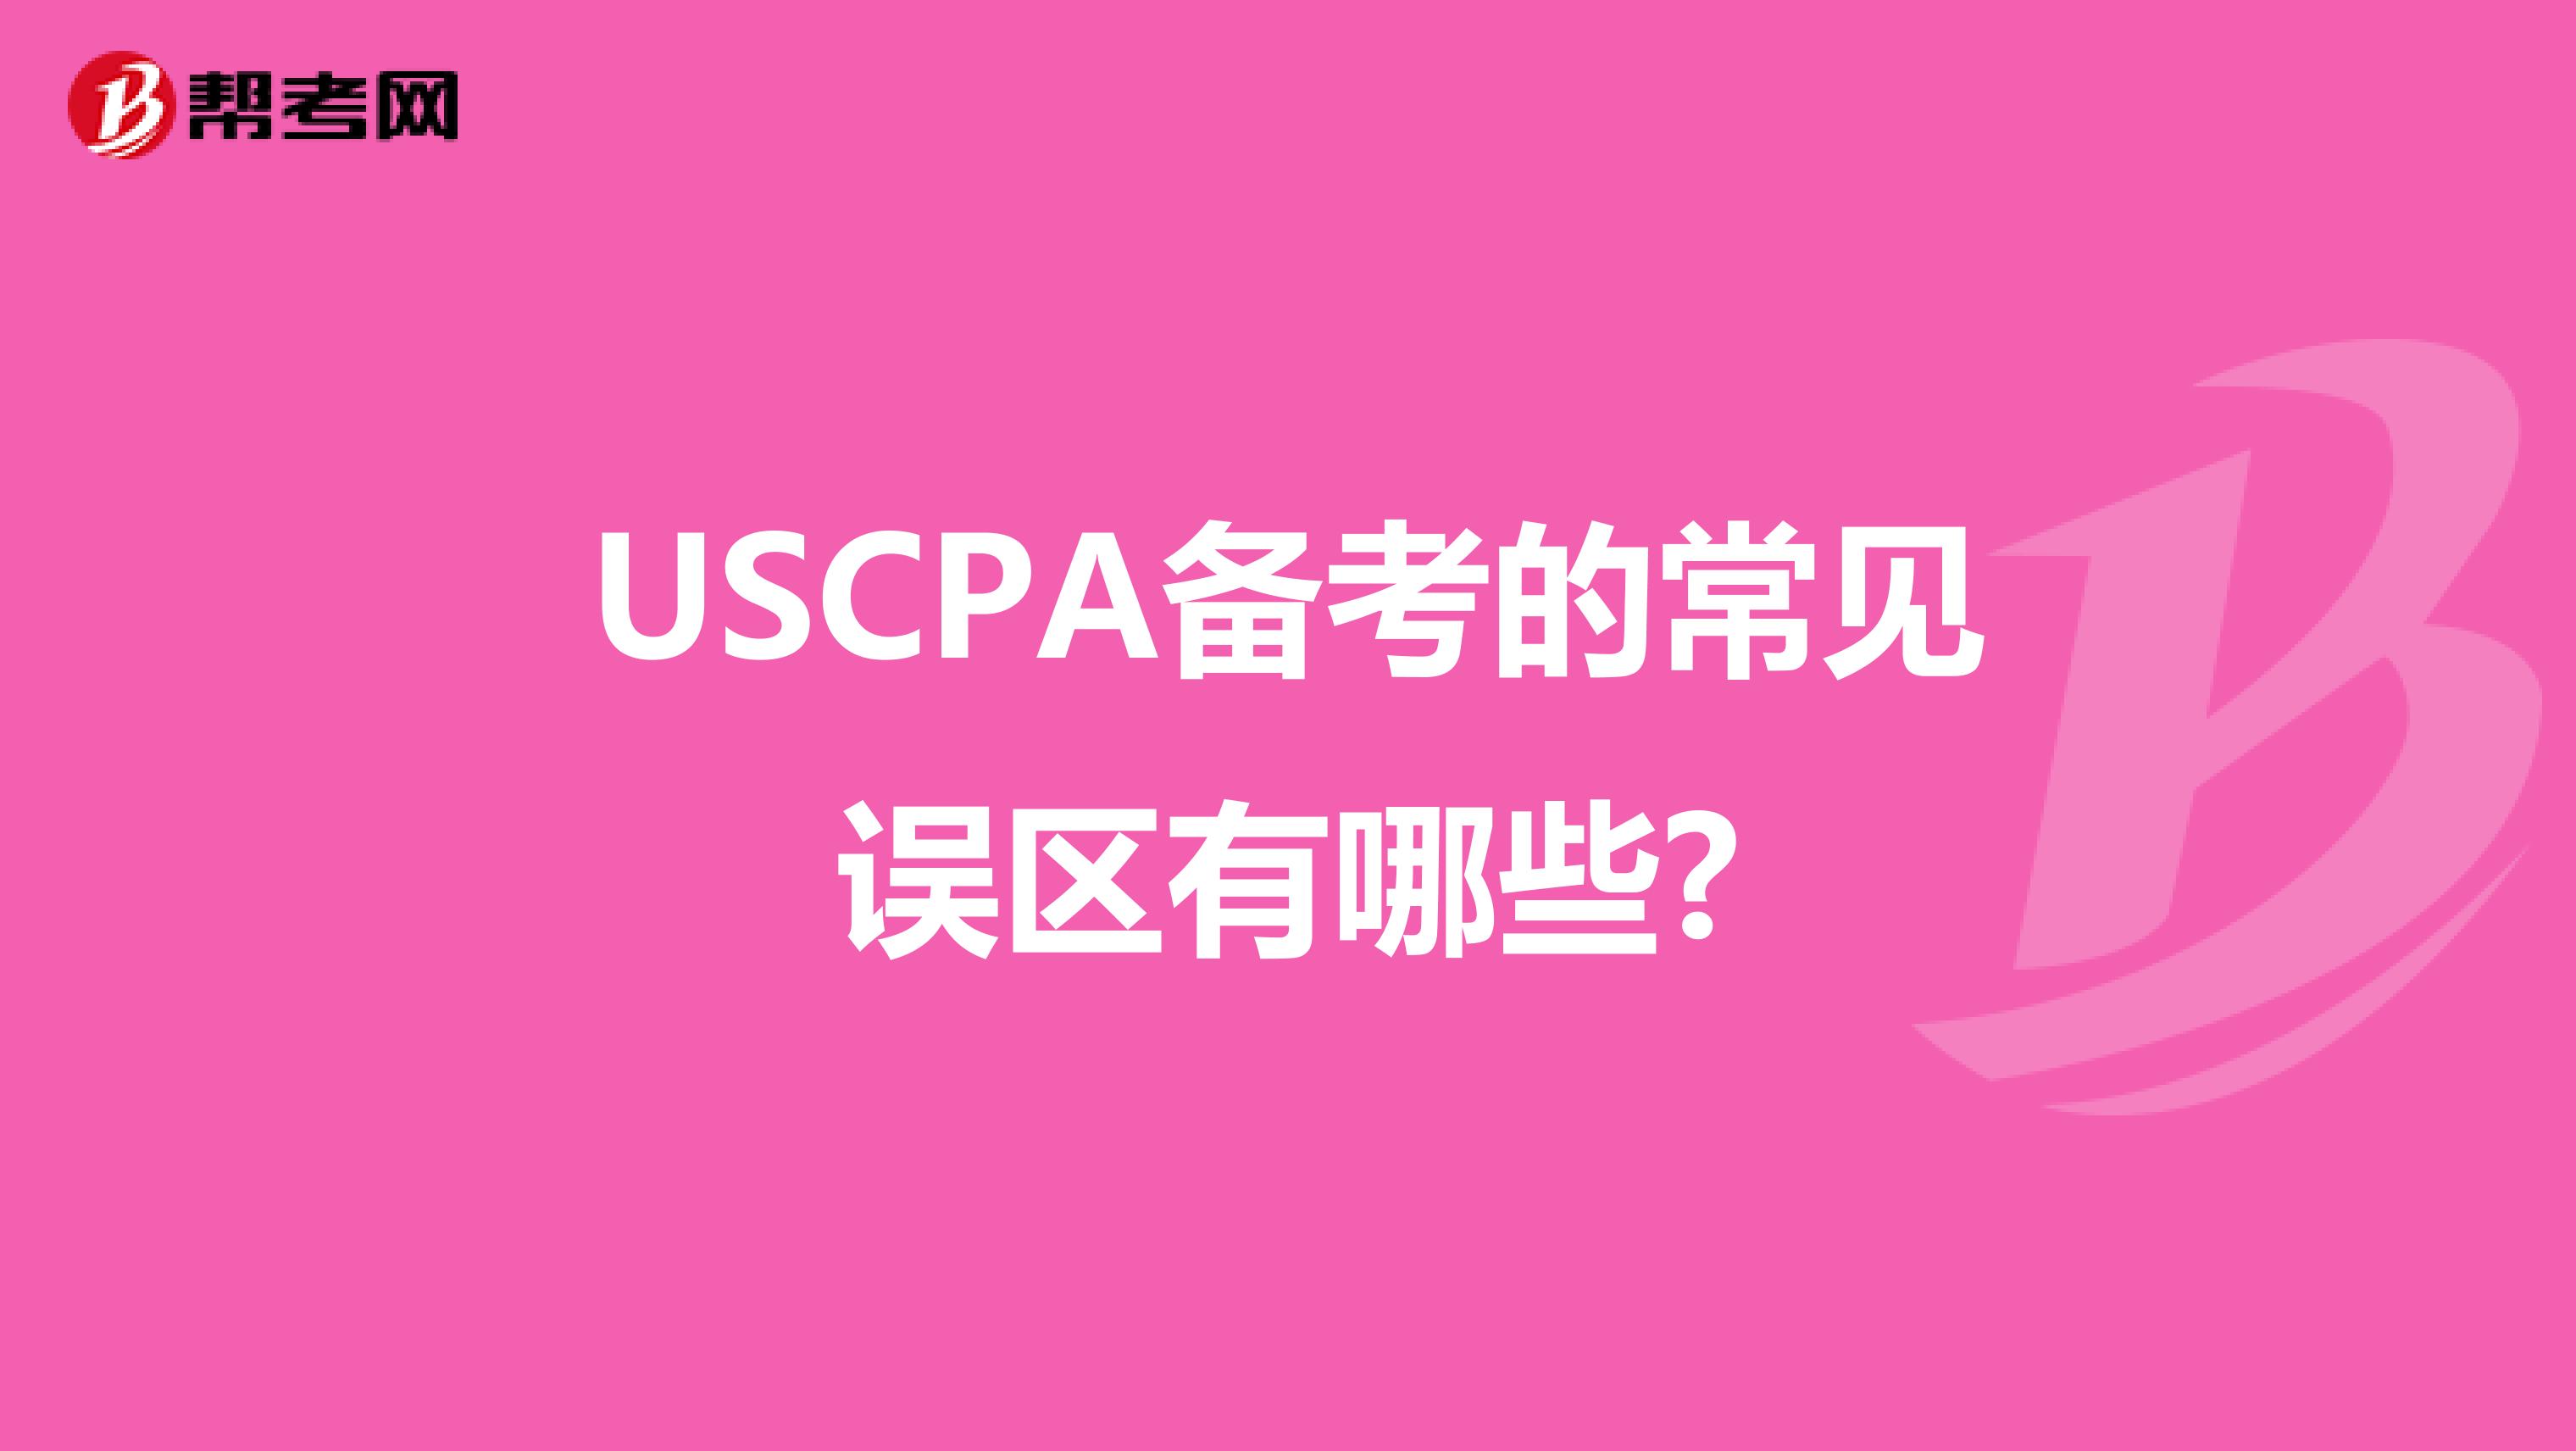 USCPA备考的常见误区有哪些?